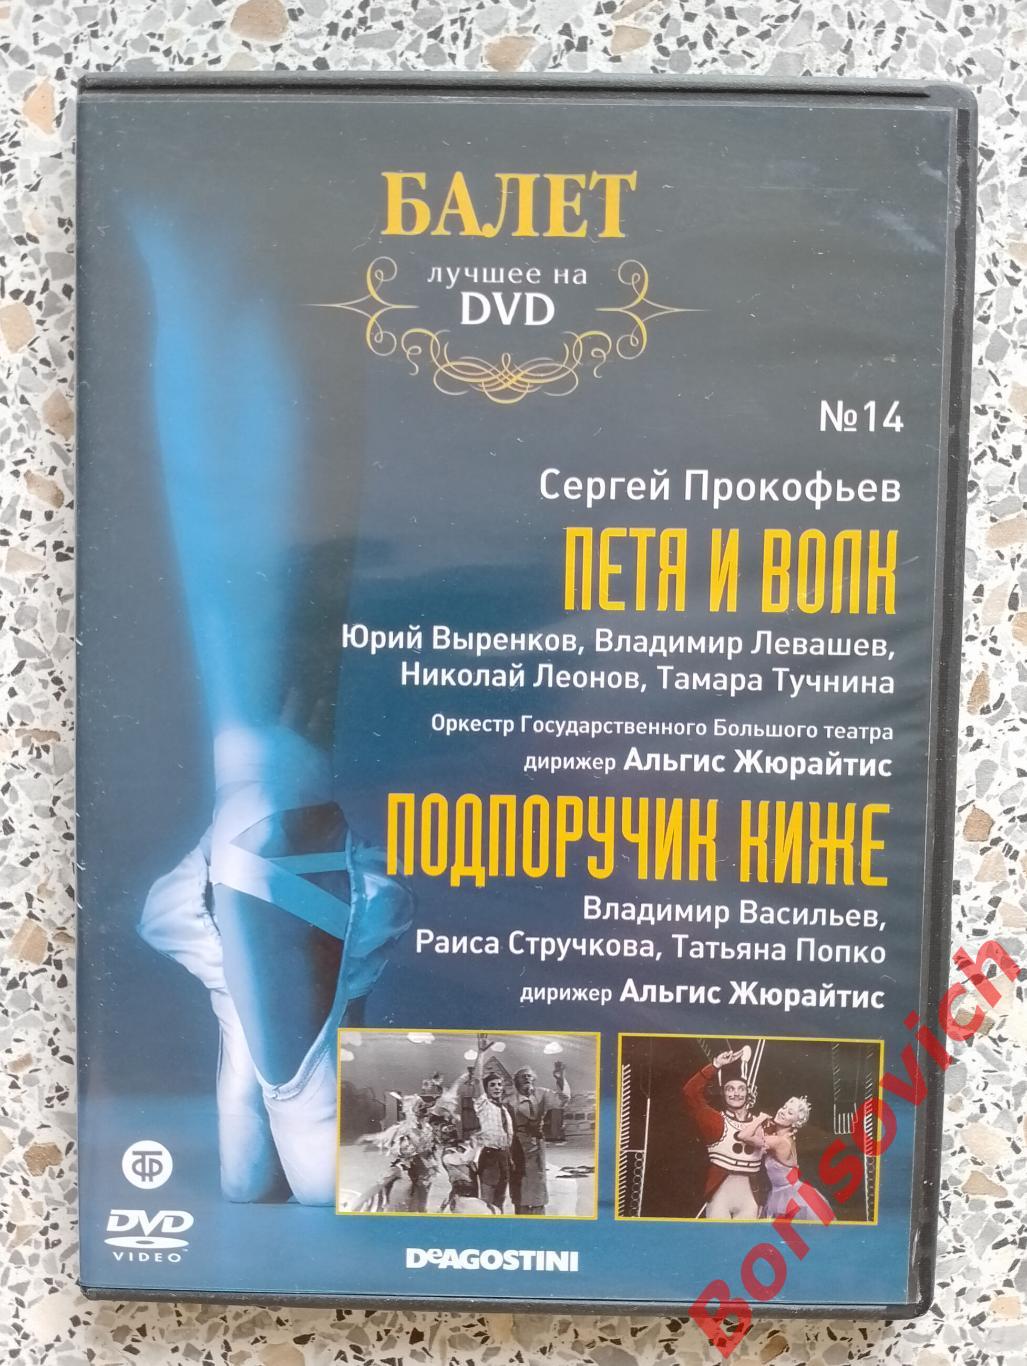 Балет лучшее на DVD С. Прокофьев Петя и волк / Подпоручик Киже